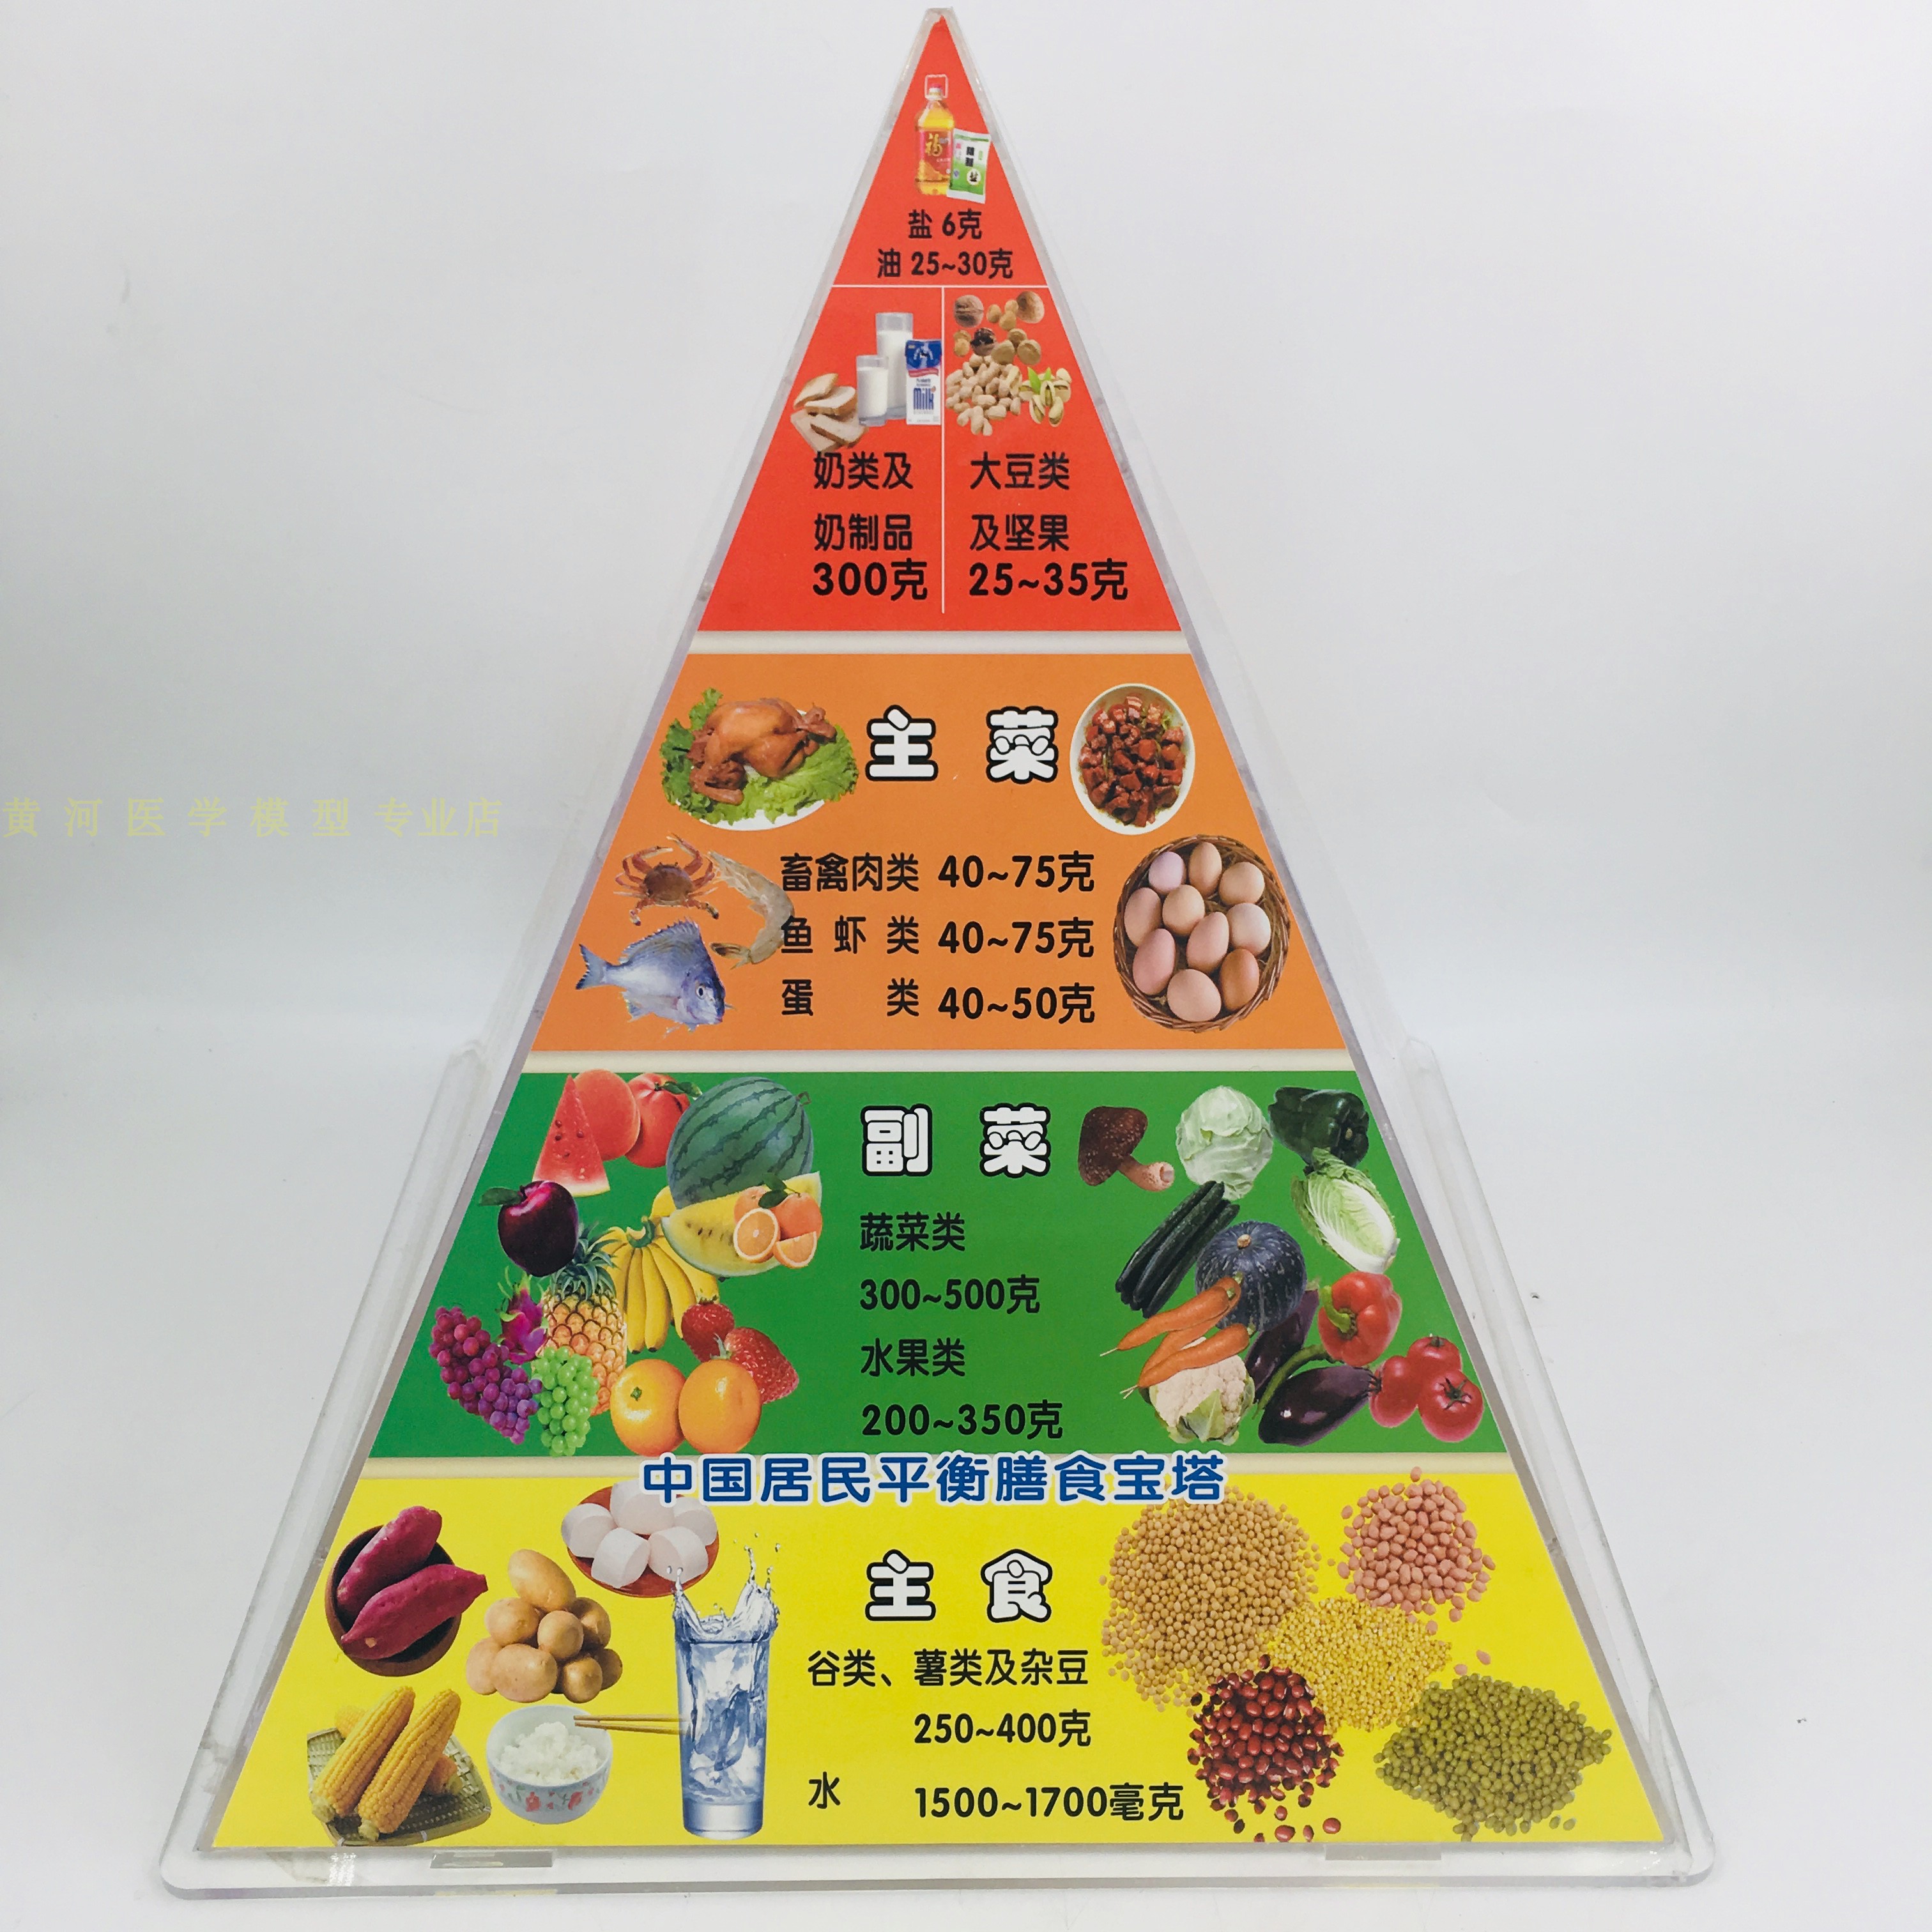 仿真食品 中国居民均衡营养膳食宝塔模型 2016版营养食物模型